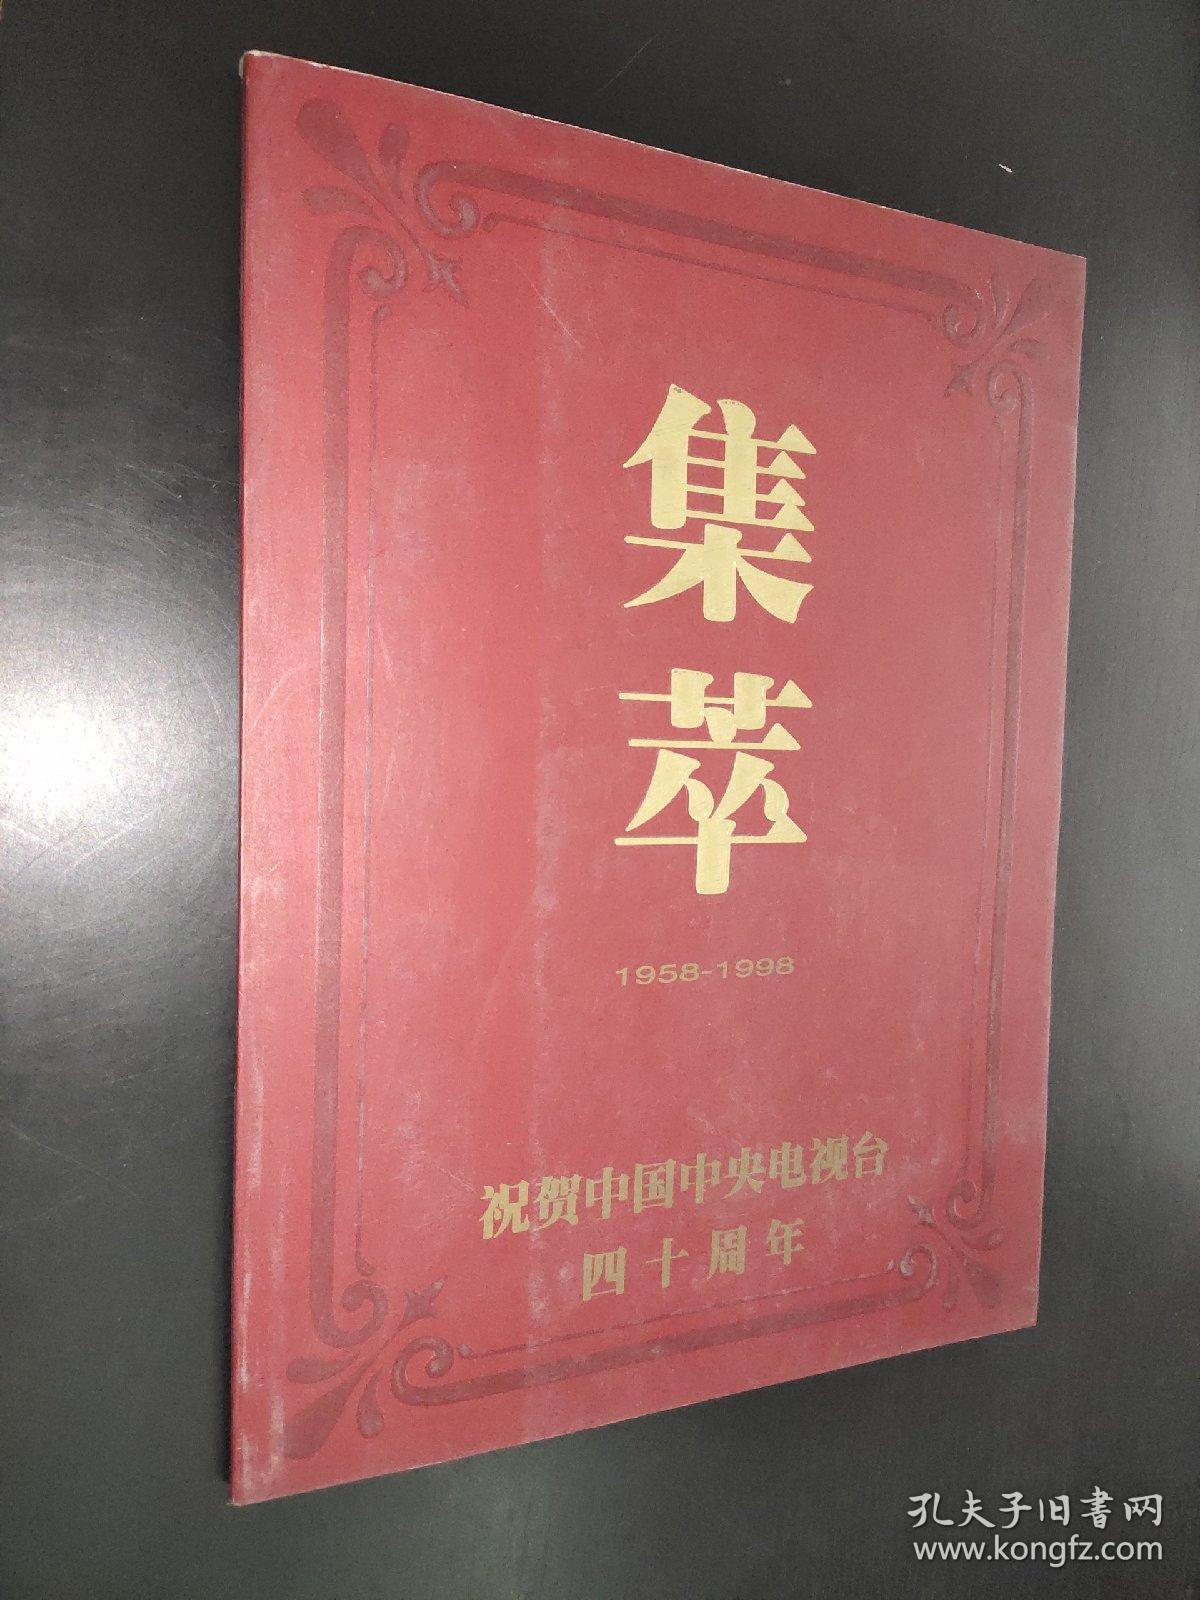 集萃 1958-1998 祝贺中国中央电视台四十周年 书画作品集